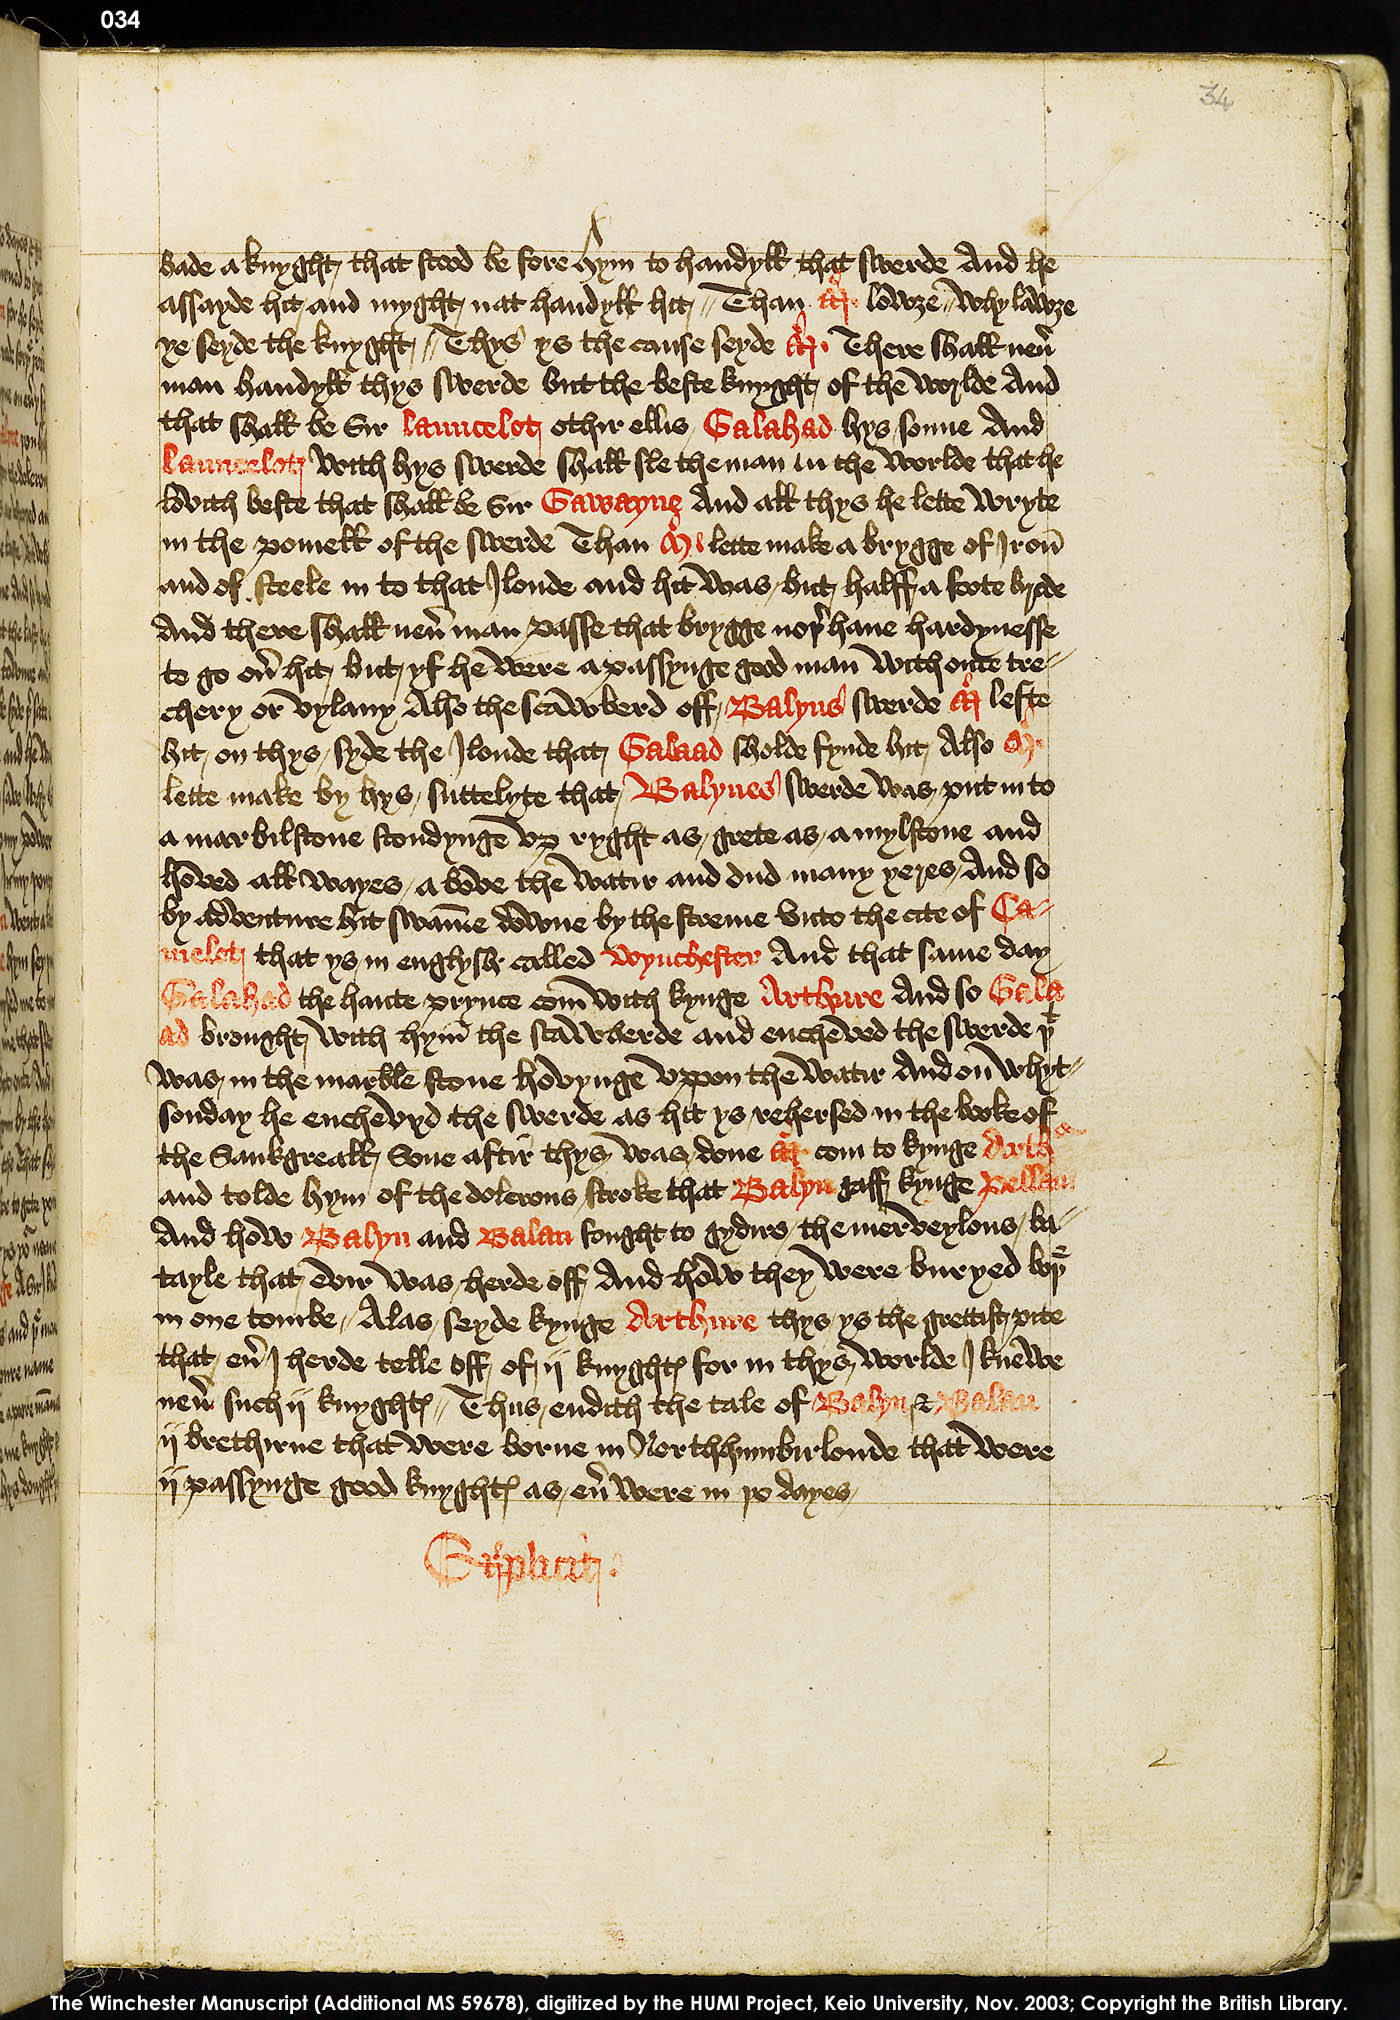 Folio 34r